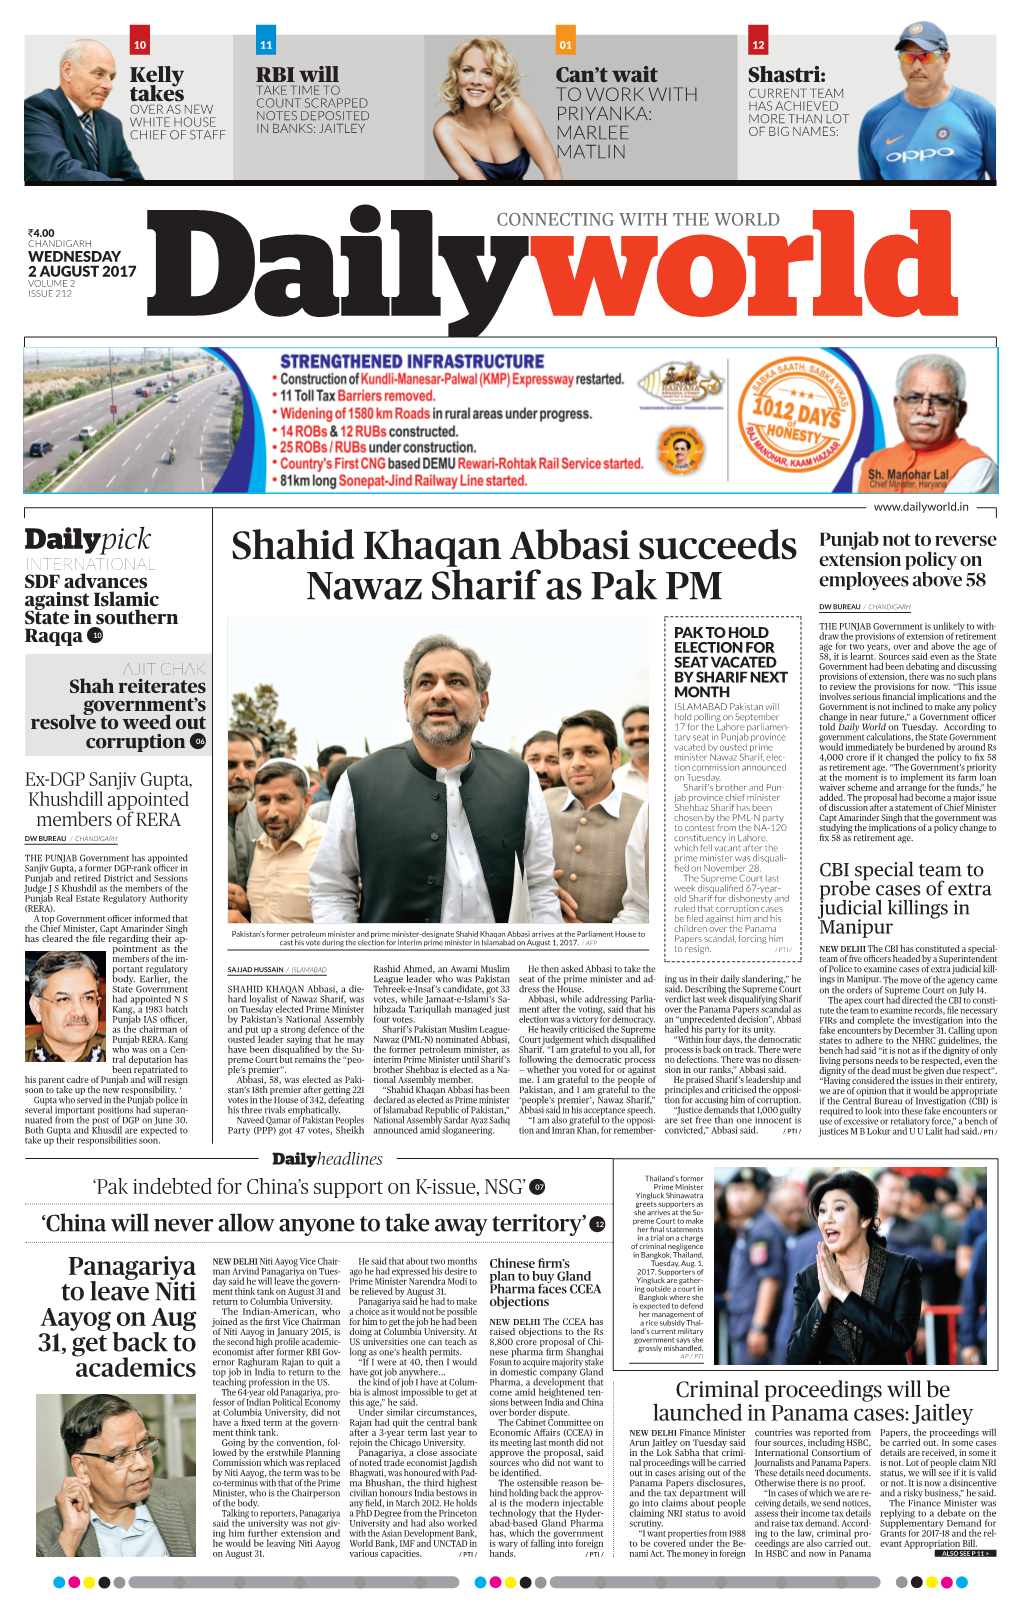 Shahid Khaqan Abbasi Succeeds Nawaz Sharif As Pak PM